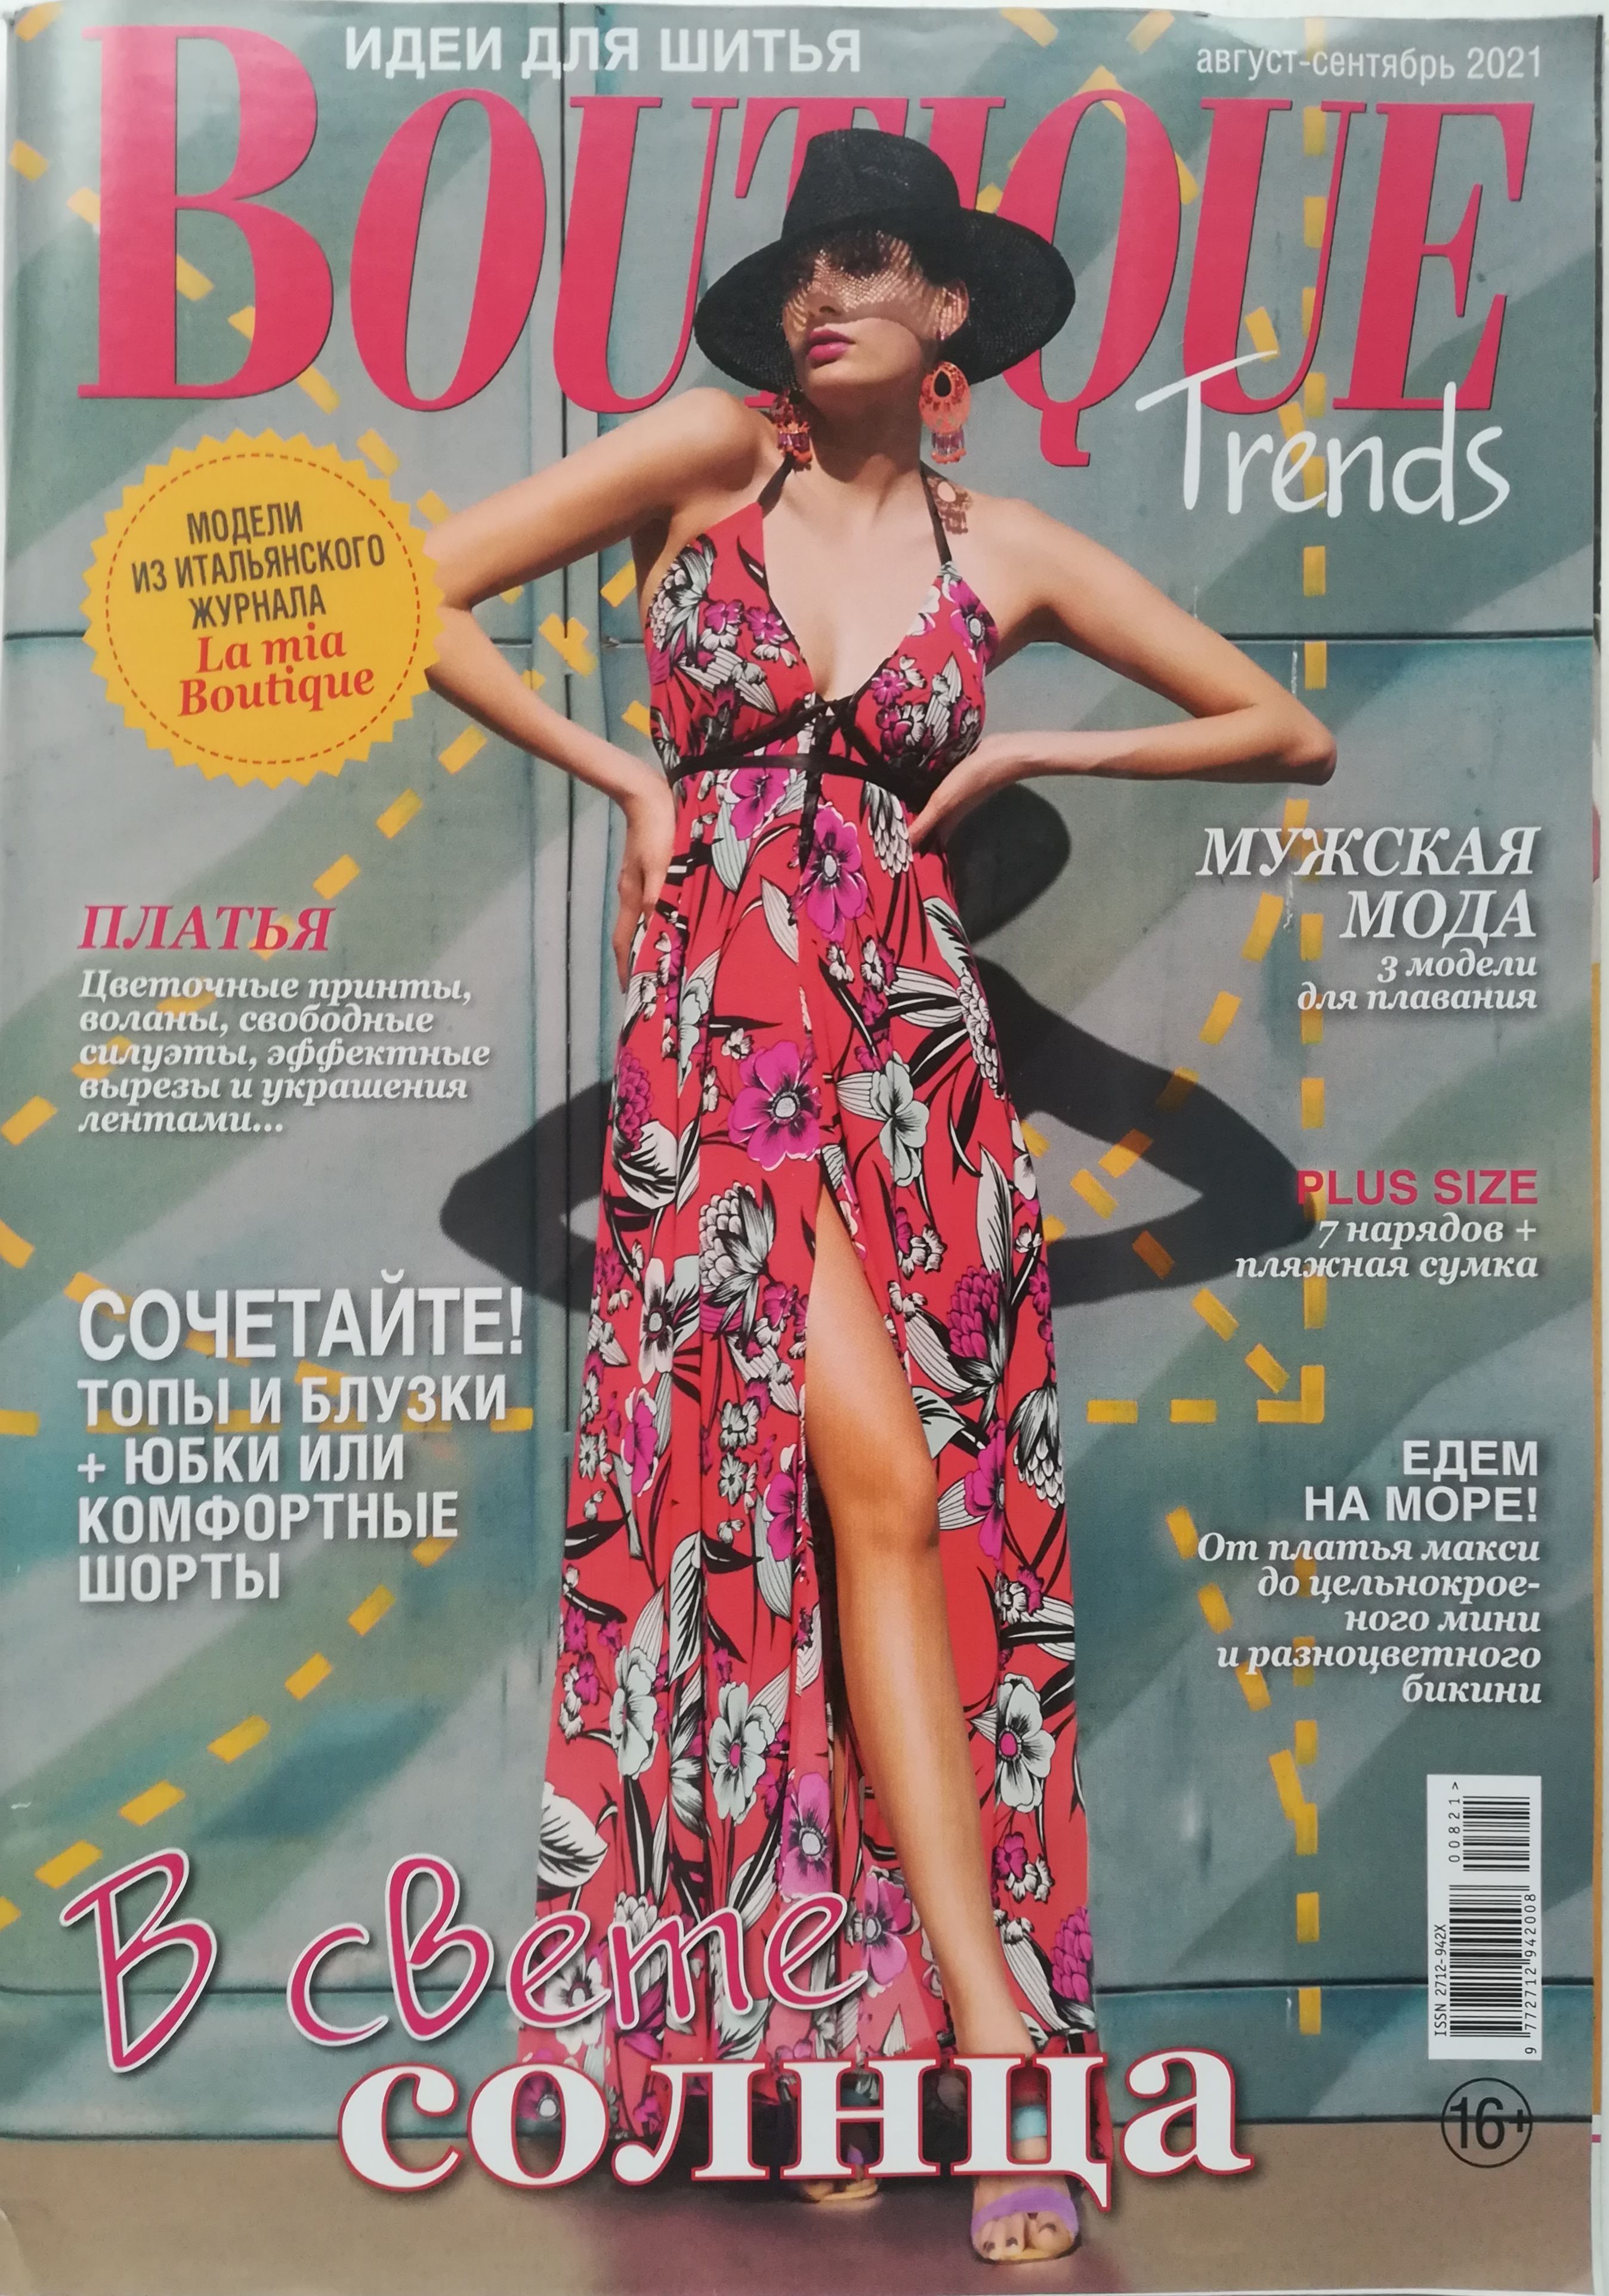 Trend boutique. Boutique журнал 2021. Журнал Boutique trends 2021. Итальянские журналы мод. Boutique журнал 2021 июнь.